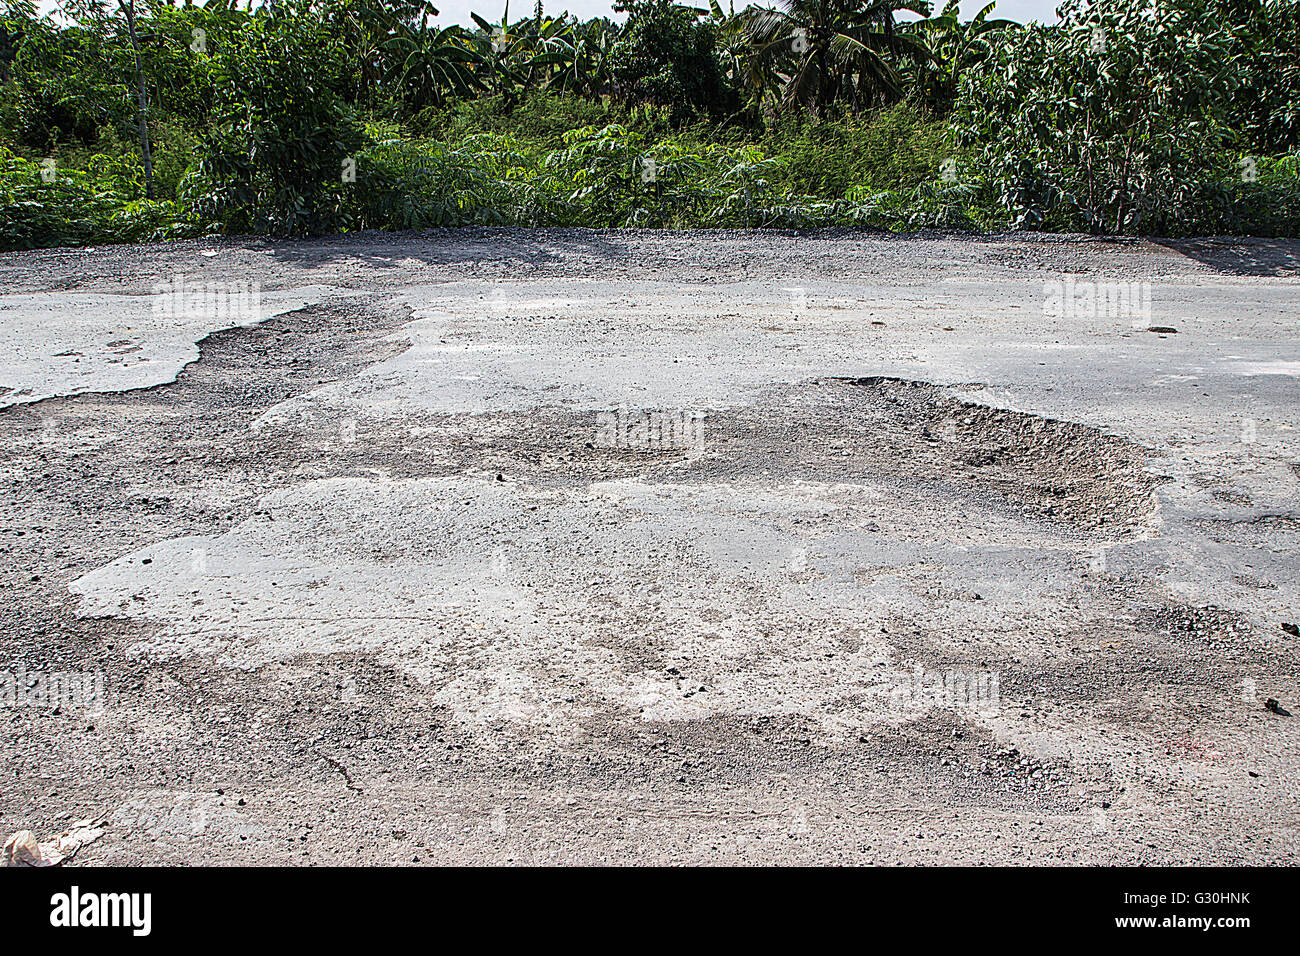 Beschädigte Straße in die Landschaft, beschädigte asphaltierte Straße mit Schlaglöchern verursacht, schlechten Strasse. Stockfoto